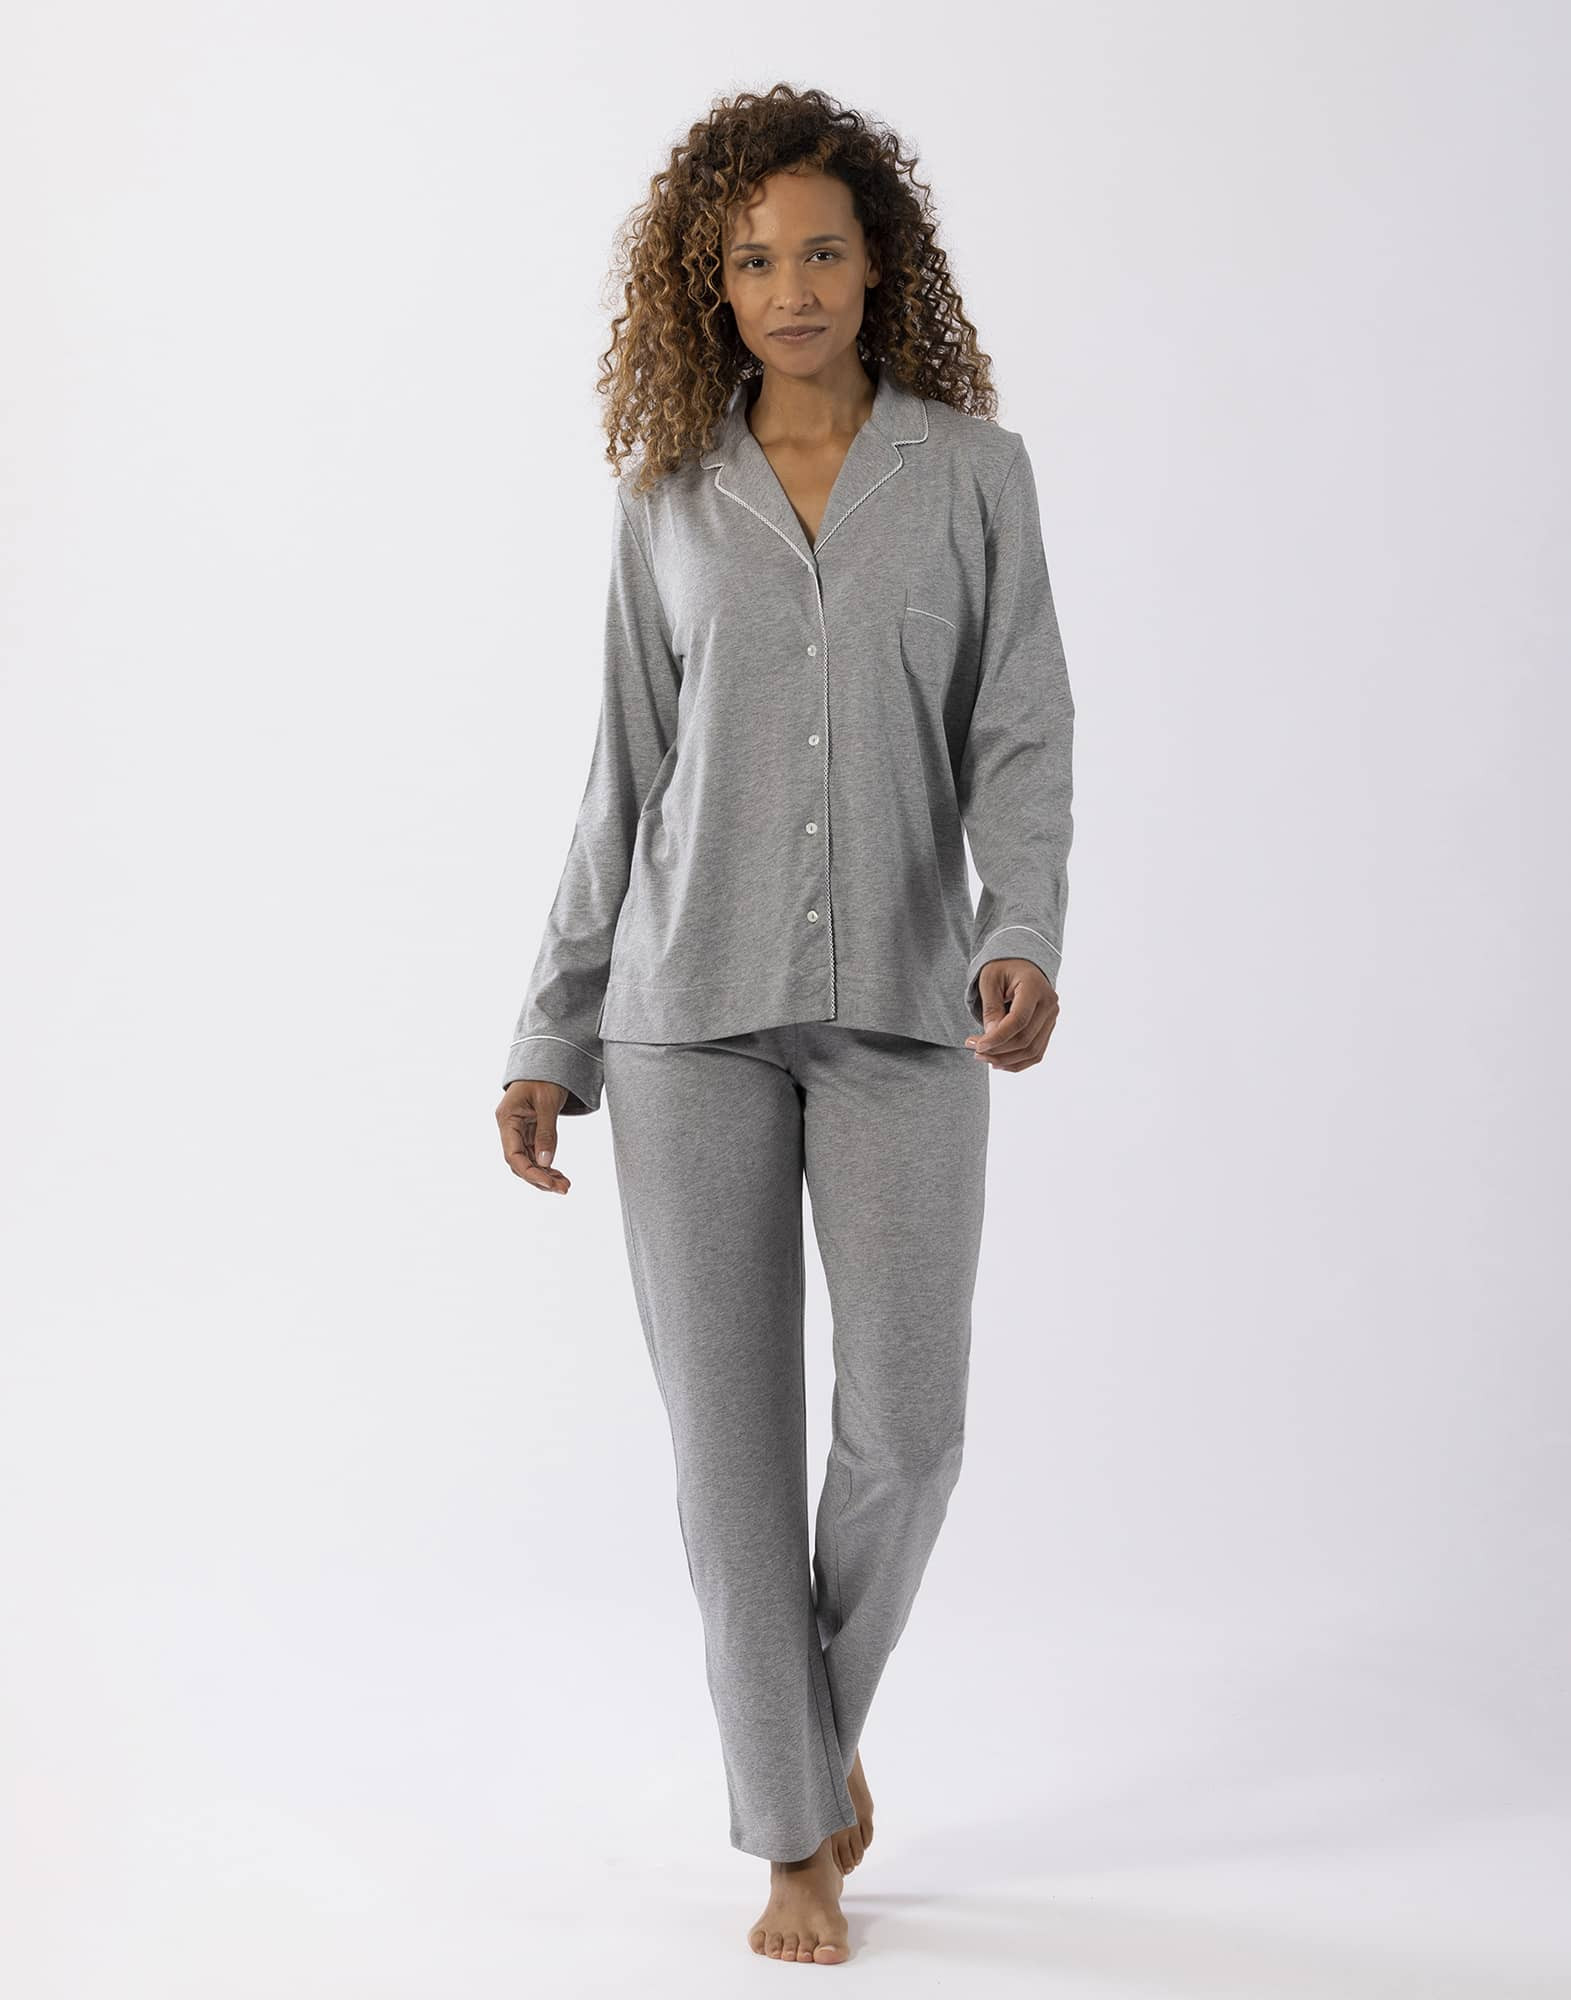 Pyjama boutonné en coton modal LES INTEMPORELLES A06 gris chiné